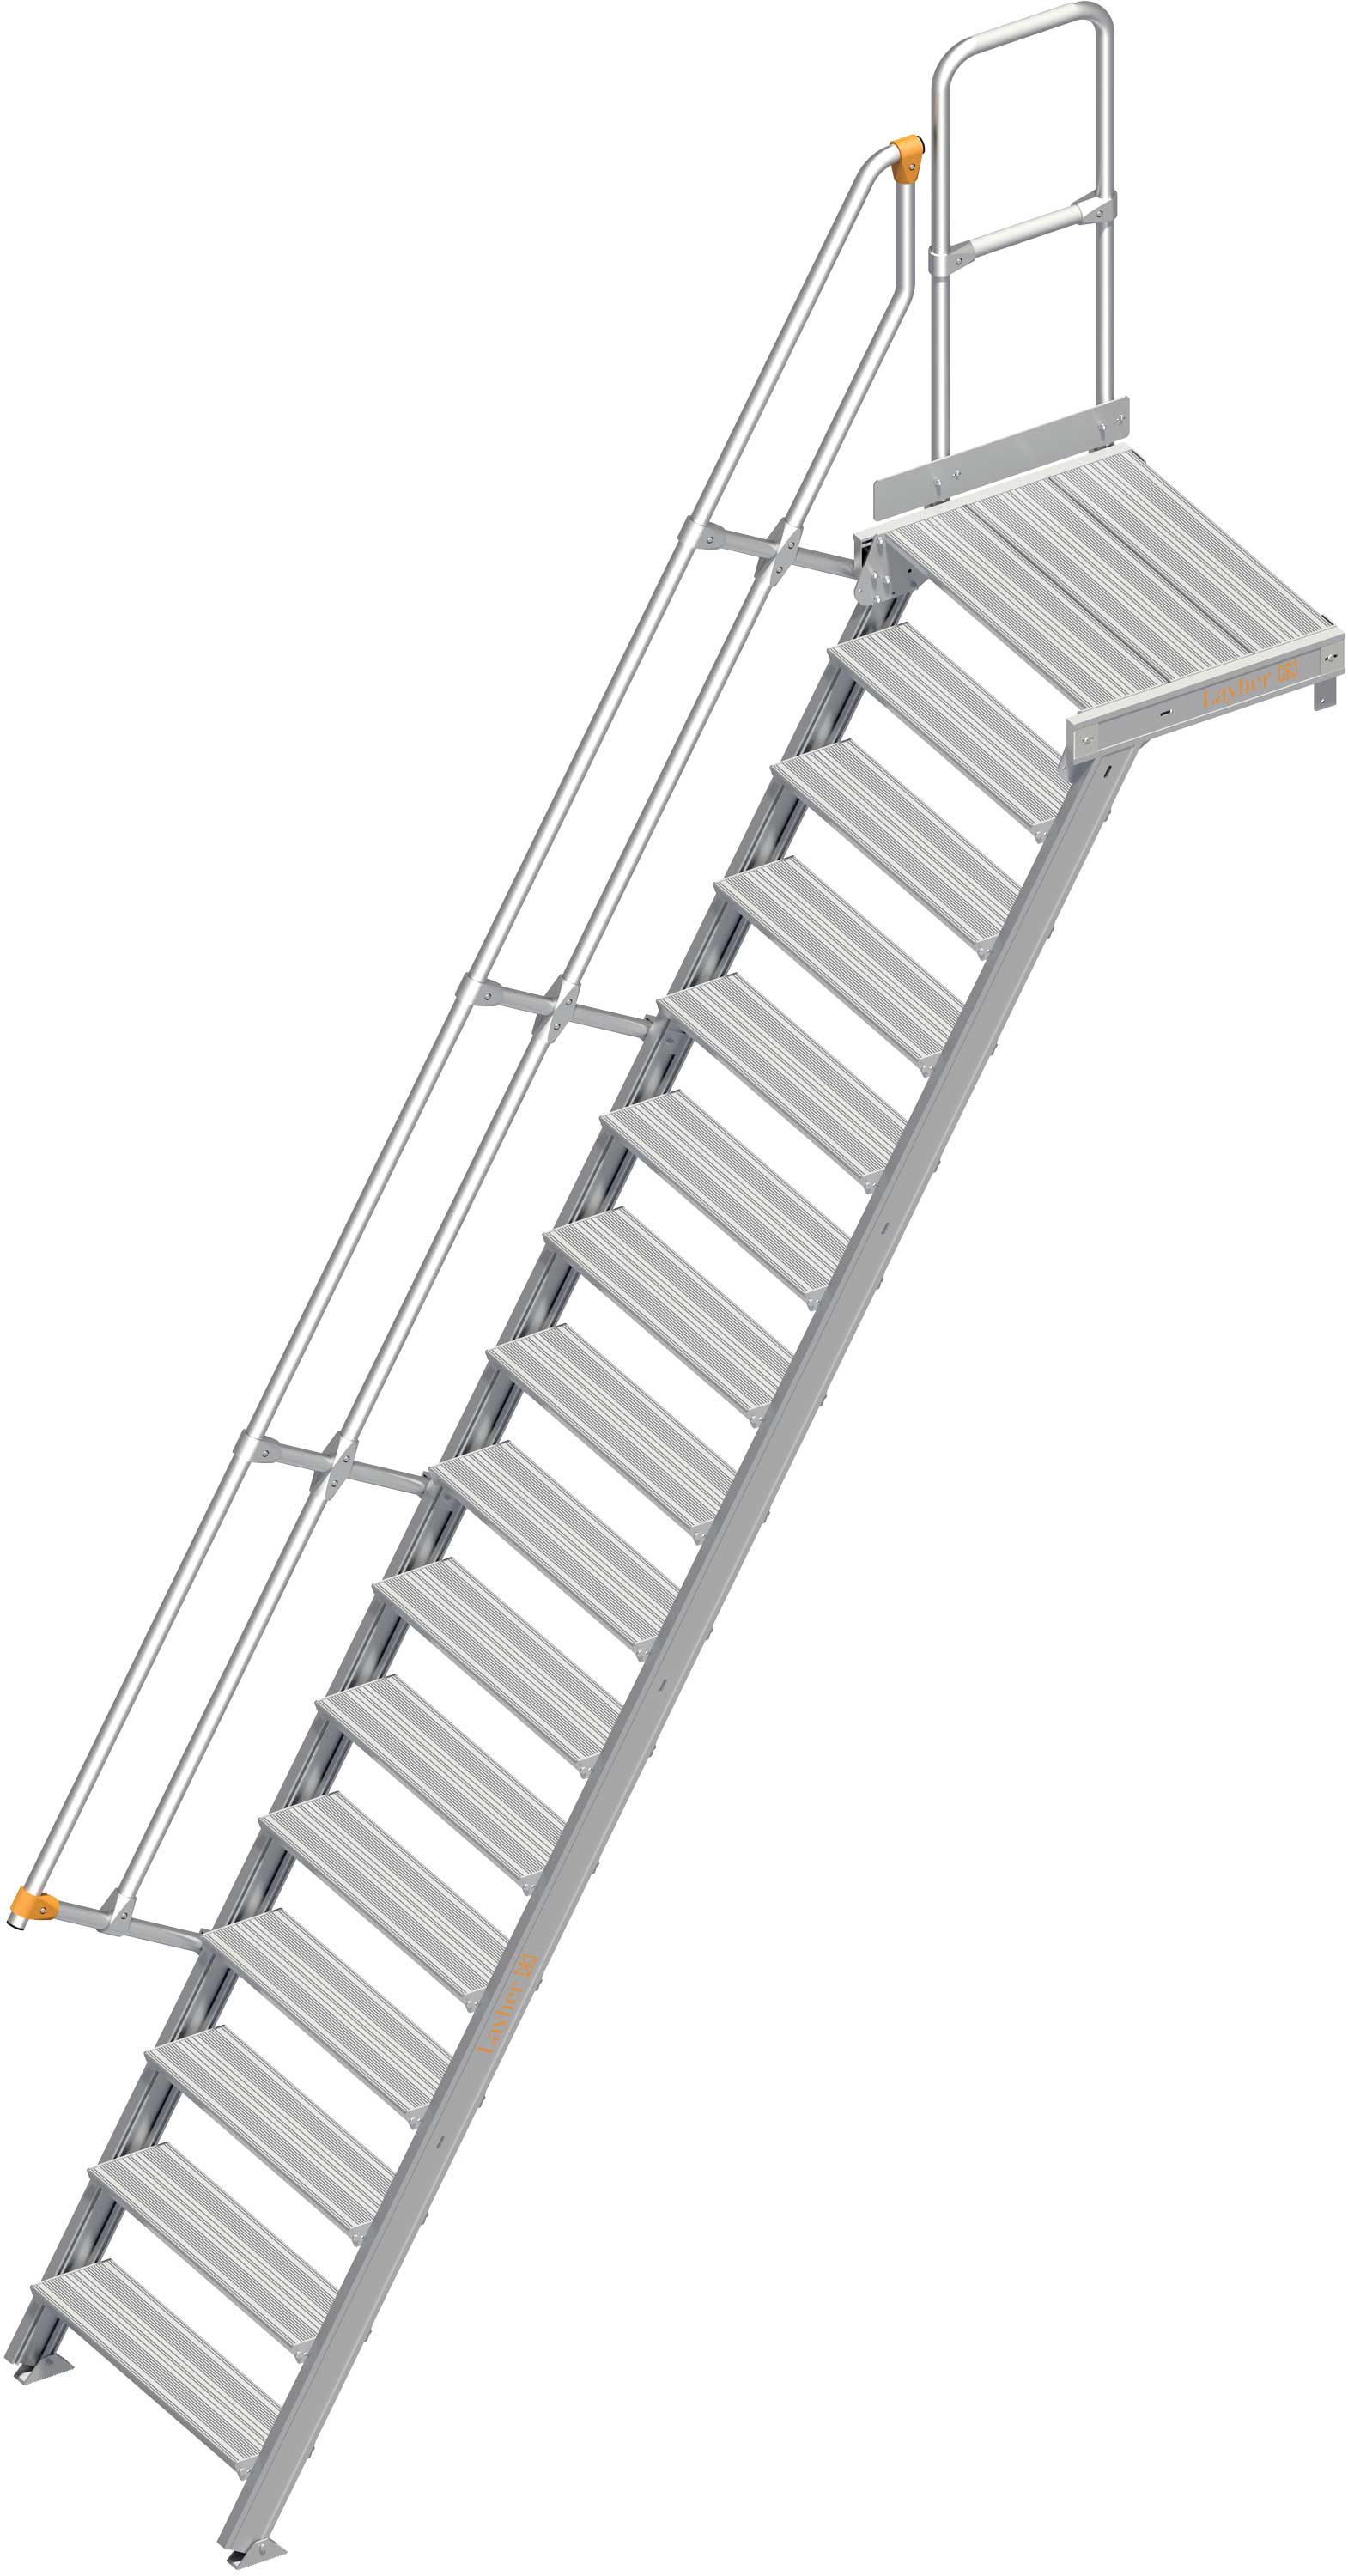 Layher Plattformtreppe 60° SG 16 Stufen - 800 mm breit